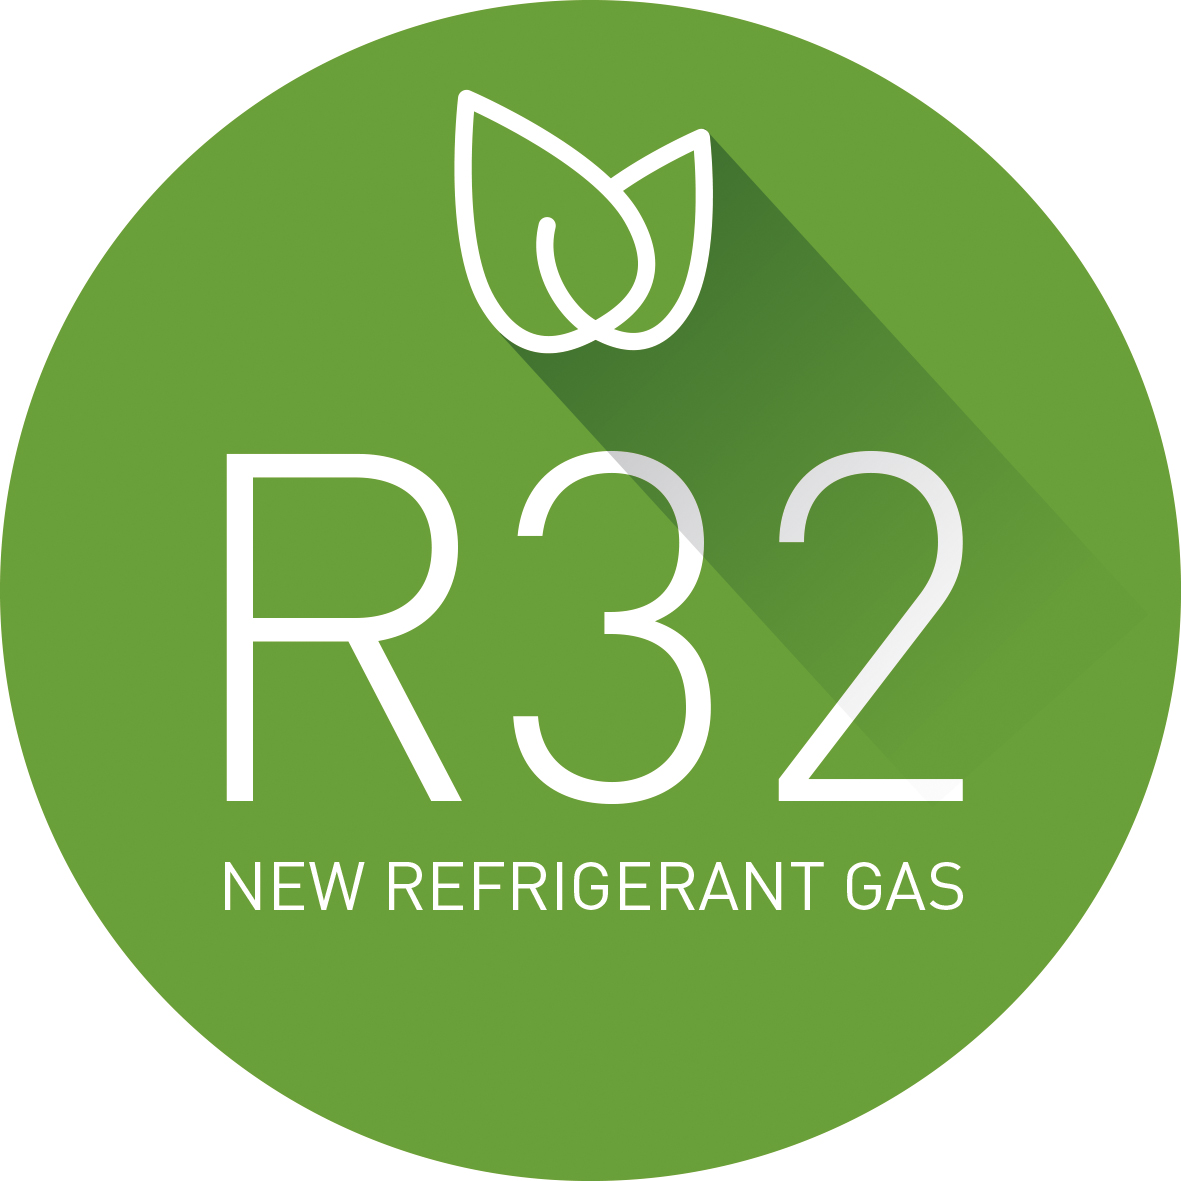 Mairo Climatización  New gas R32, environment friendly and more efficient